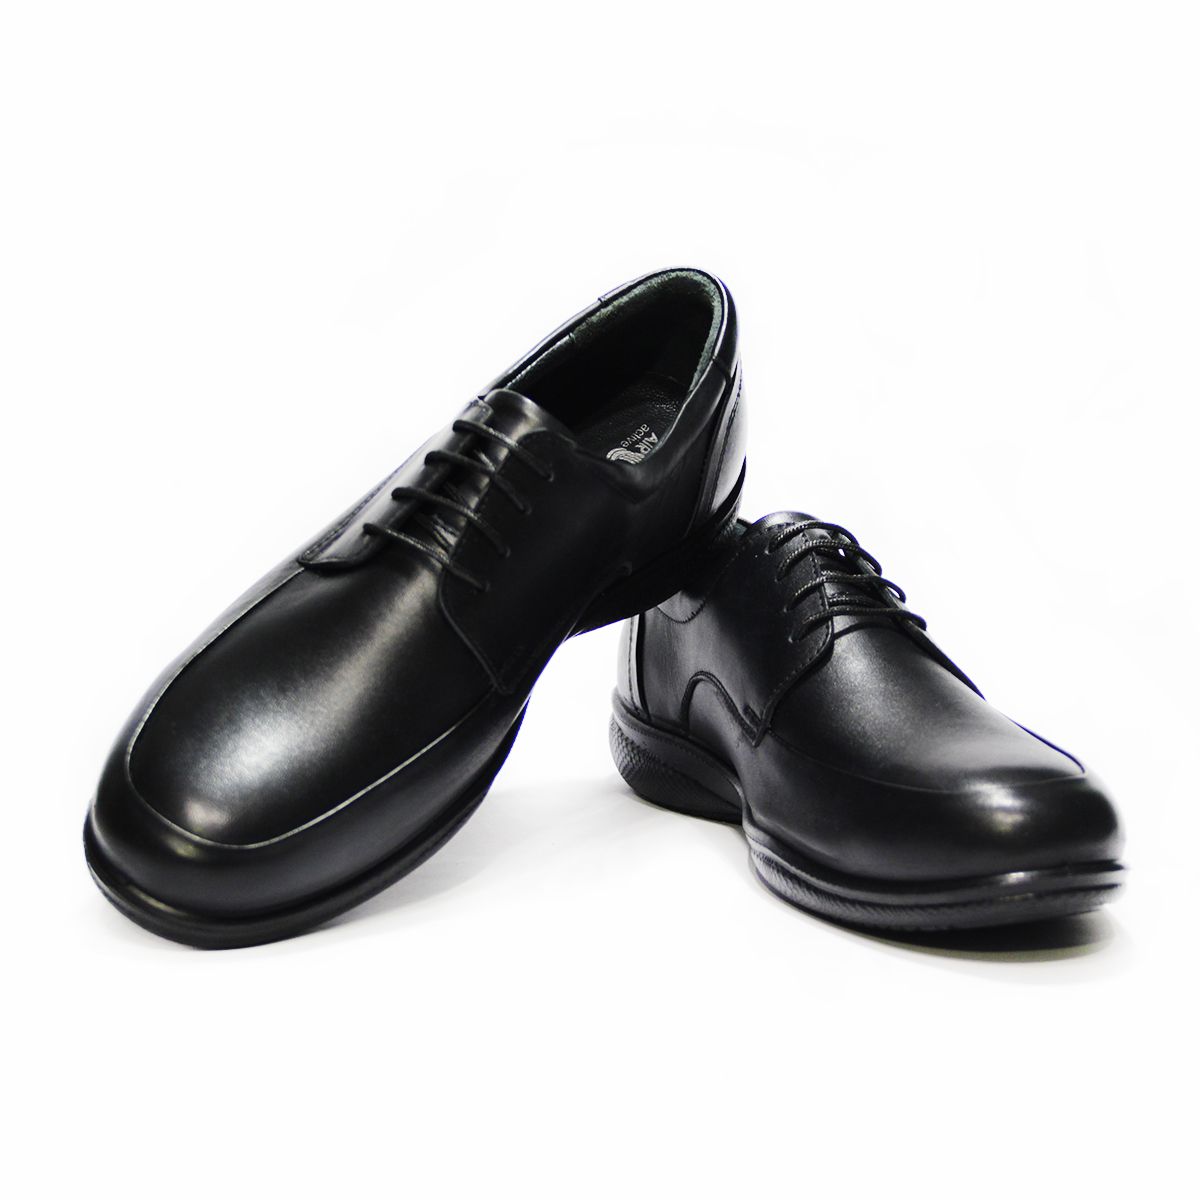 کفش روزمره مردانه فرزین کد TBM 022 رنگ مشکی -  - 3